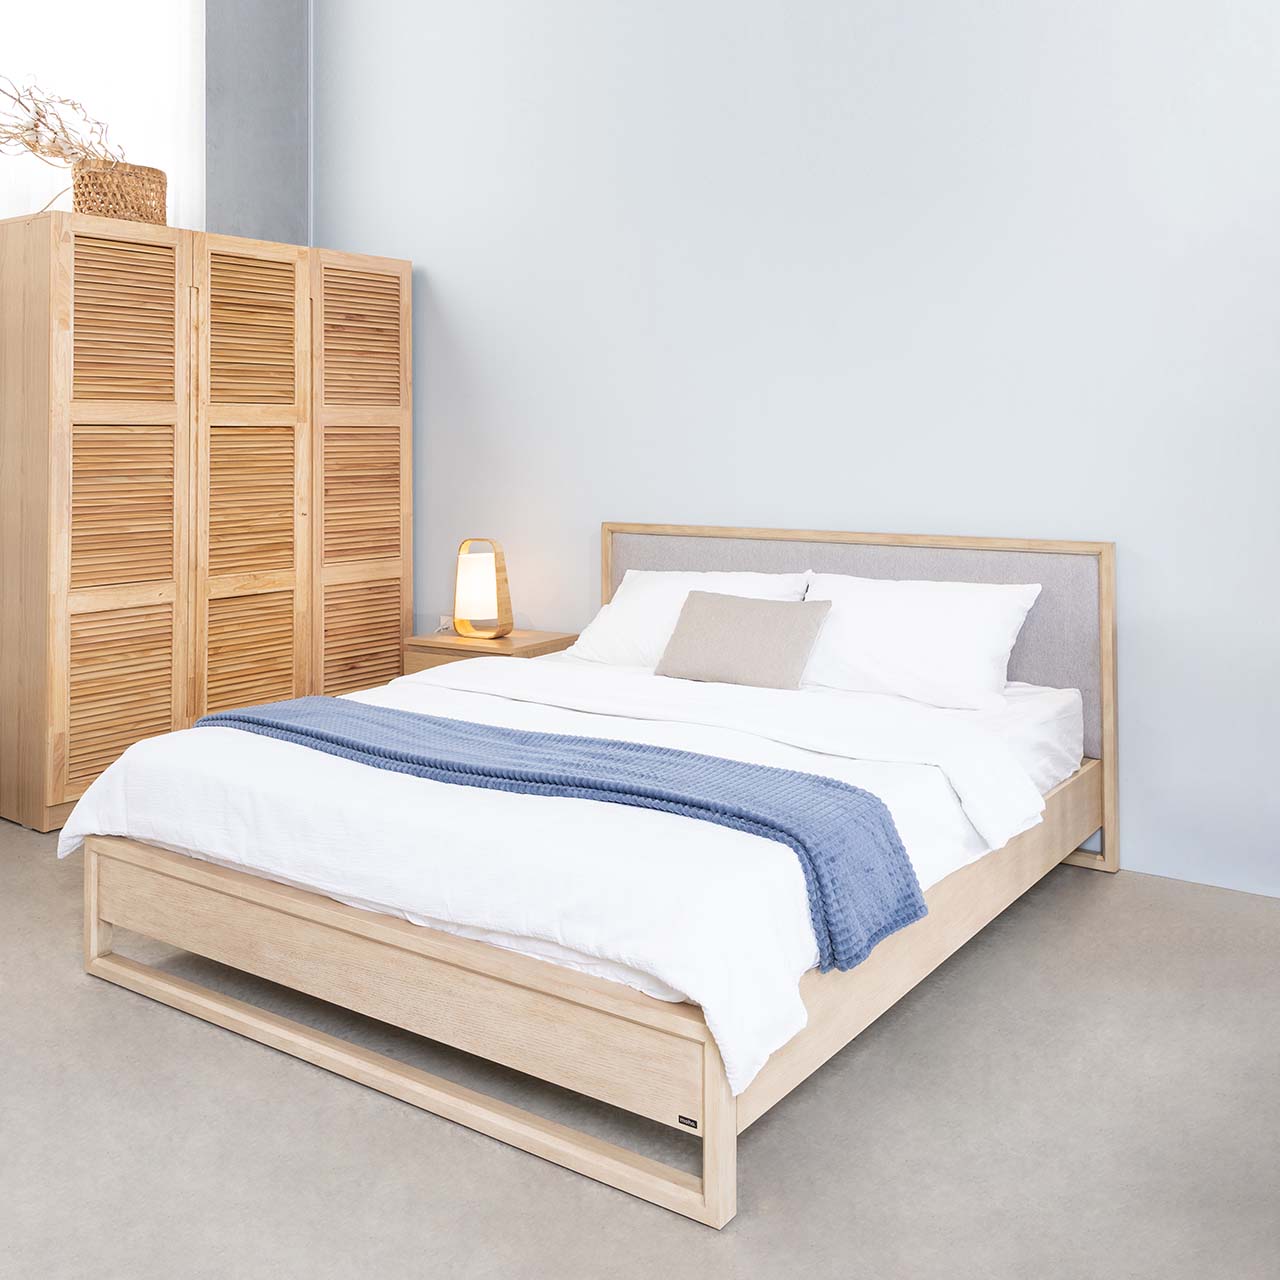 Giường ngủ gỗ đơn giản với thiết kế hiện đại, chất liệu cao cấp và chi phí phù hợp sẽ là sự lựa chọn hàng đầu của bạn vào năm